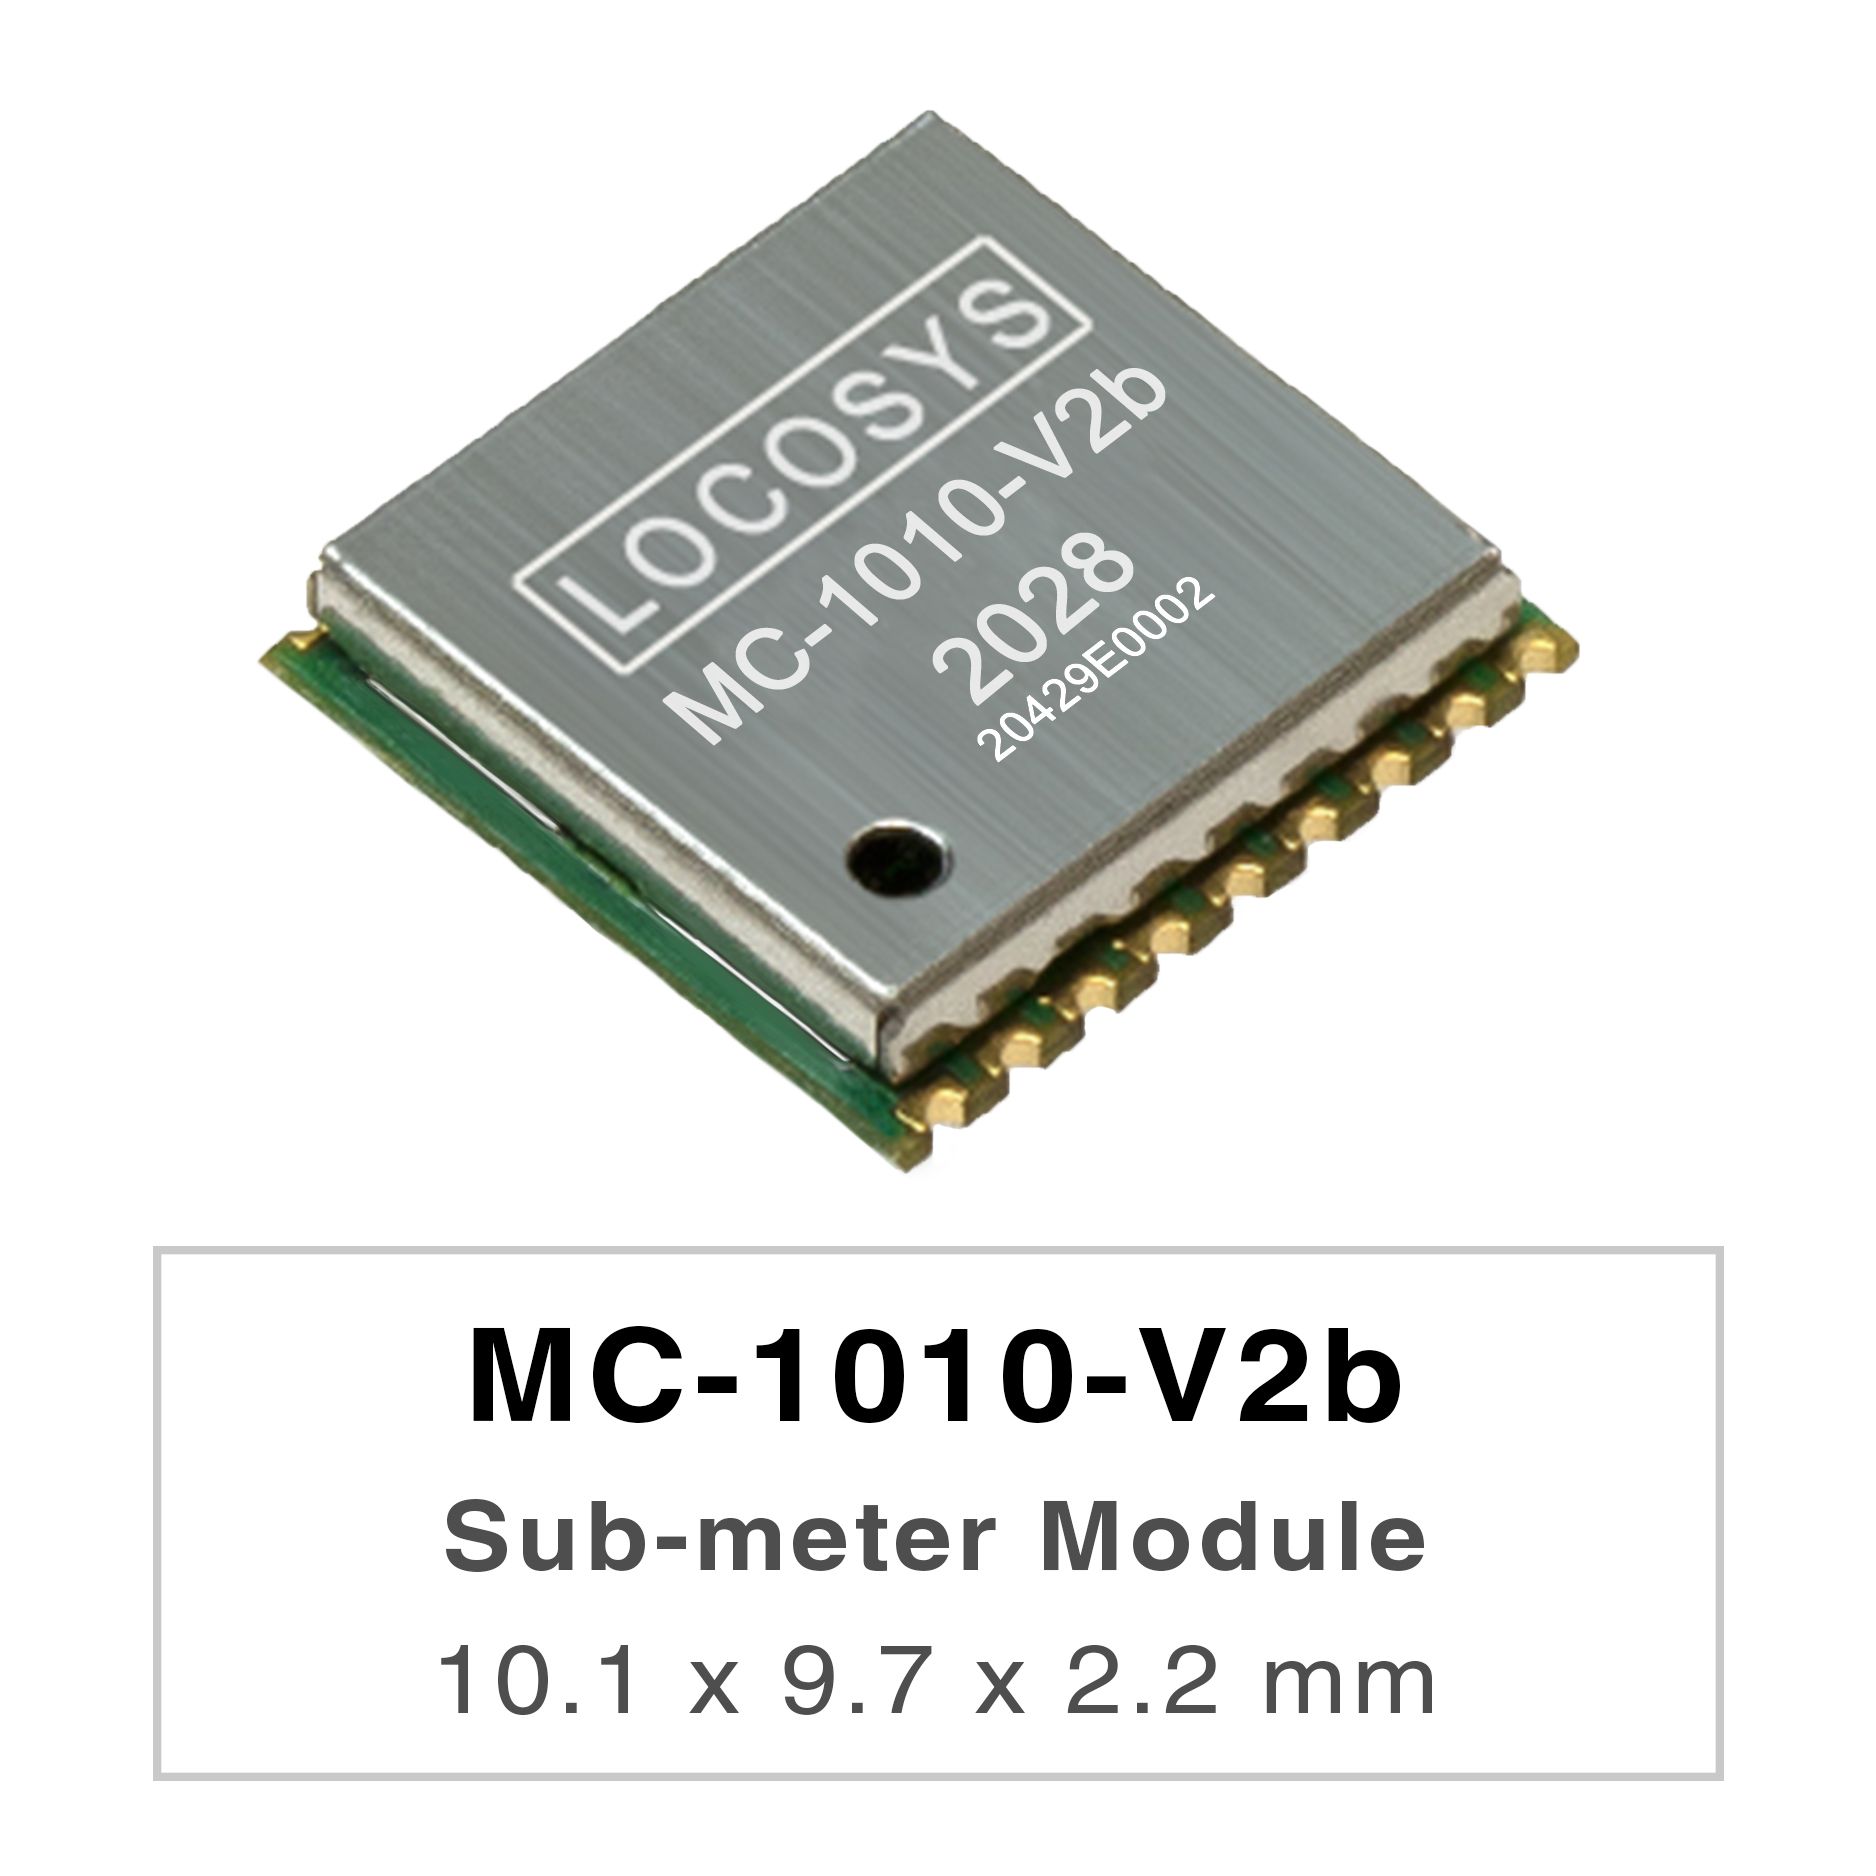 <br />LOCOSYS MC-1010-Vxxシリーズは、すべてのグローバルな民間ナビゲーションシステムを追跡できる
    高性能デュアルバンドGNSS測位モジュール
    です。12 nmプロセスを採用し、効率的な
    <br />電力管理アーキテクチャを統合して、低電力と高感度を実現します。